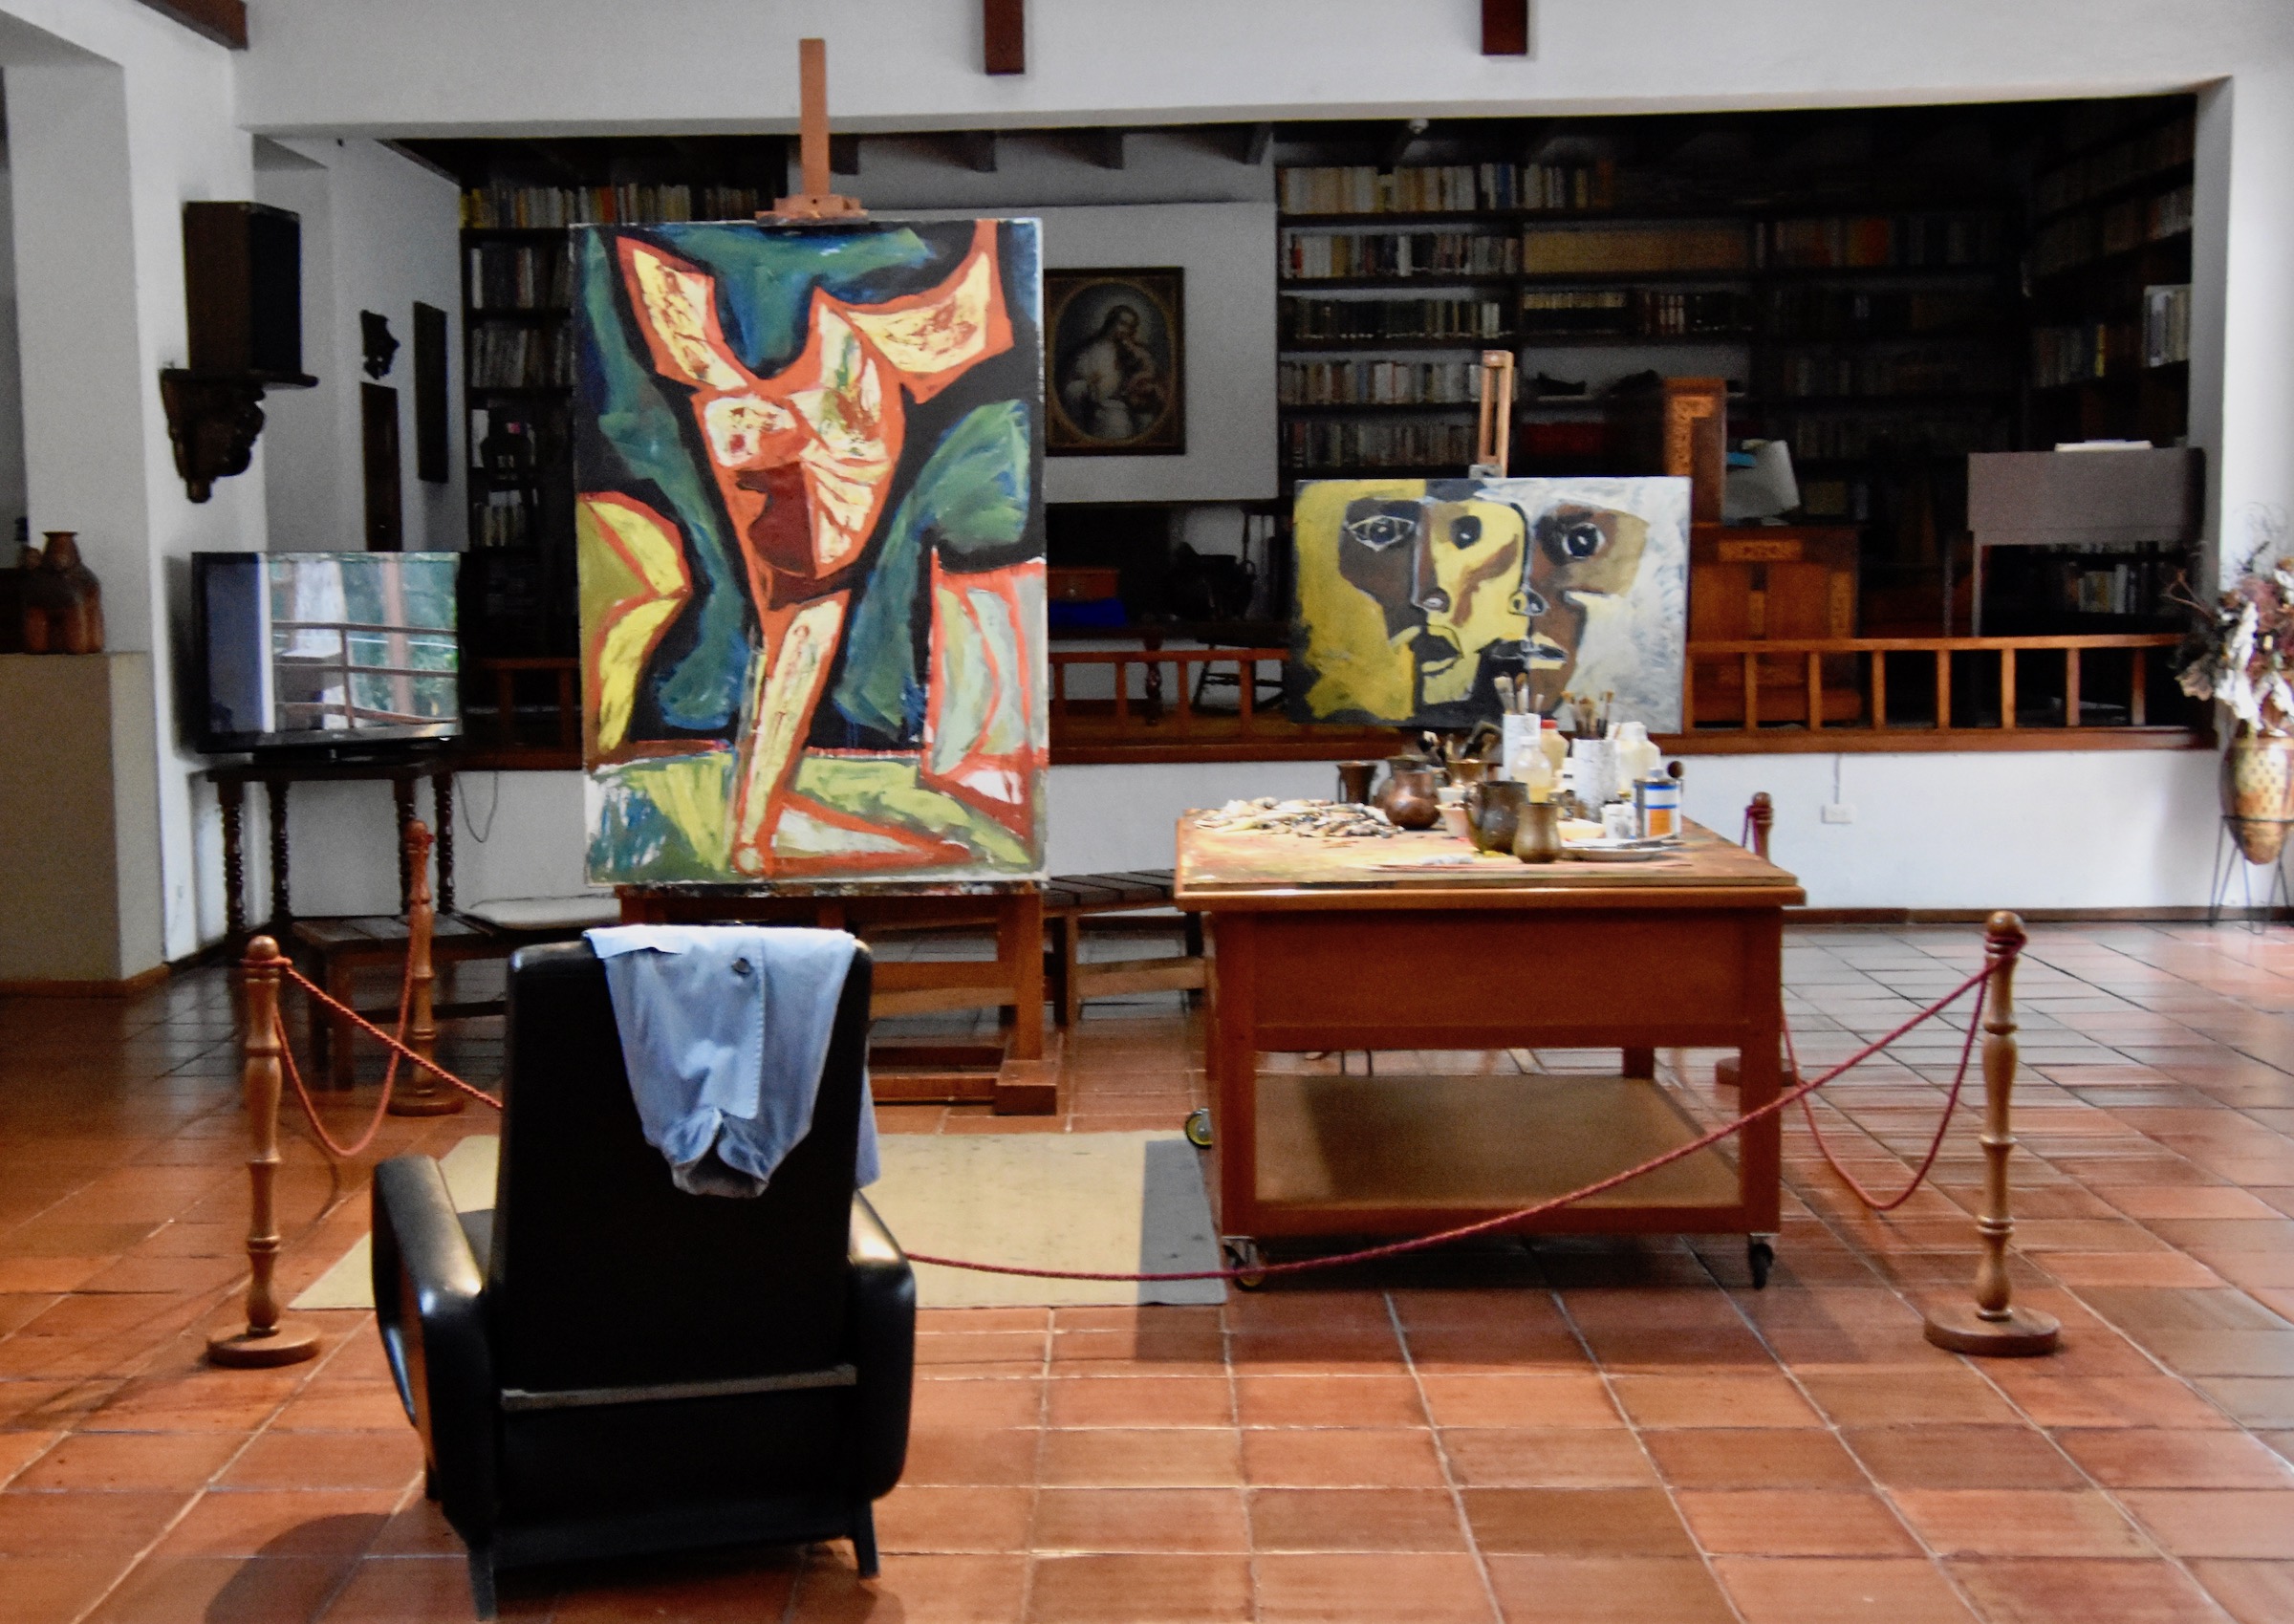 Guayasamin Studio & Library, Quito Highlights